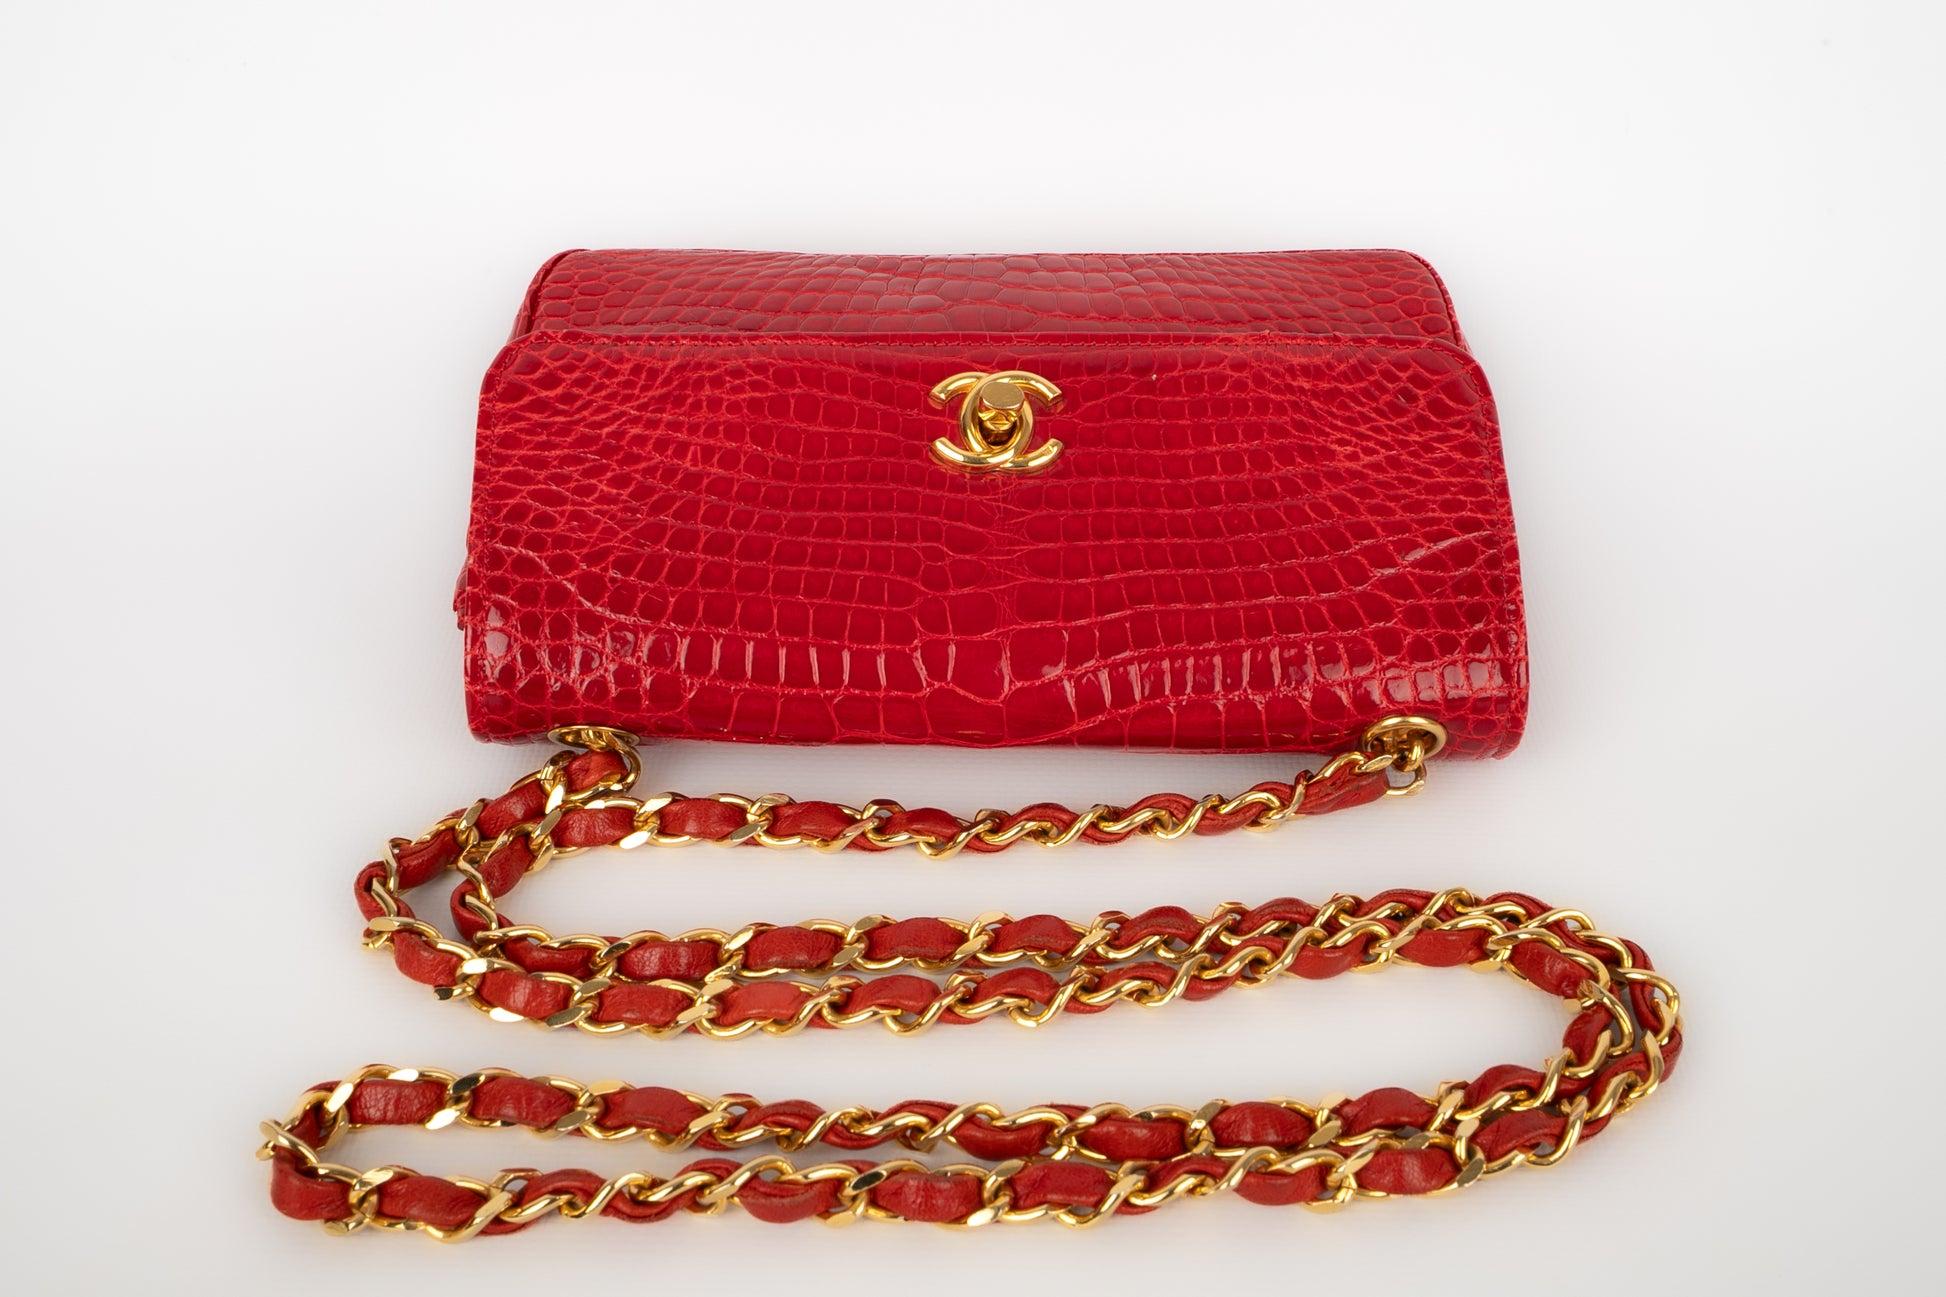 Chanel - (Made in France) Winzige Abendtasche aus rotem exotischem Krokodilleder. Keine Seriennummer. Stück aus dem Verkauf.

Zusätzliche Informationen:
Zustand: Sehr guter Zustand
Abmessungen: Breite: 19 cm - Höhe: 12 cm - Tiefe: 5 cm - Stiel: 115